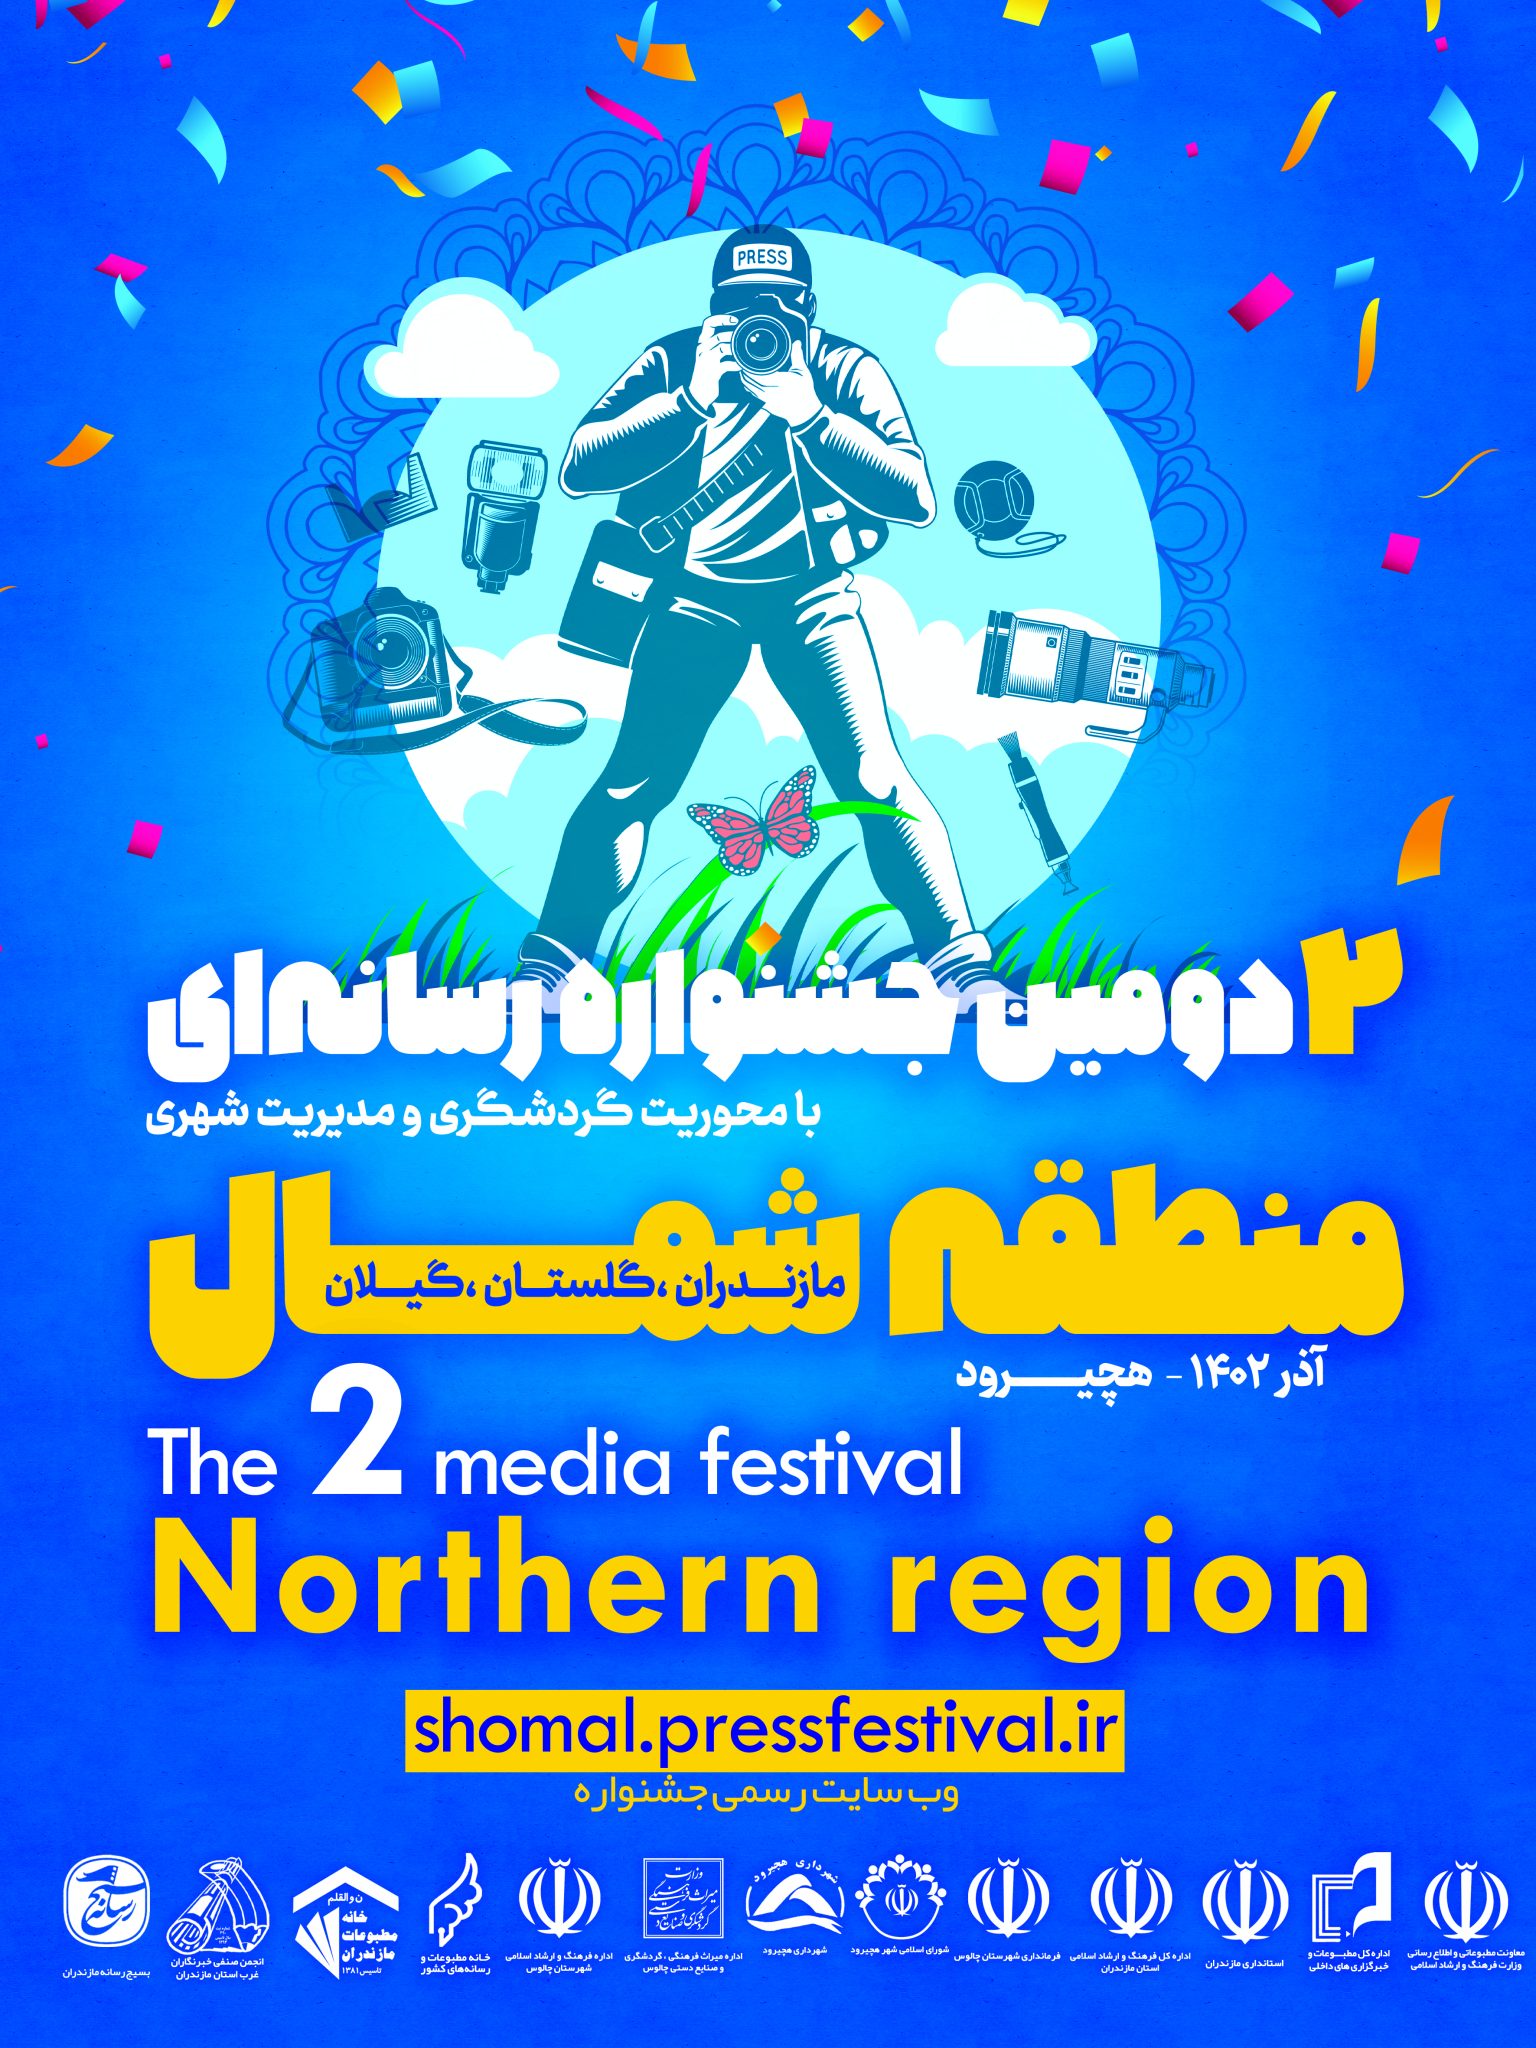 فراخوان دومین جشنواه رسانه ای منطقه شمال